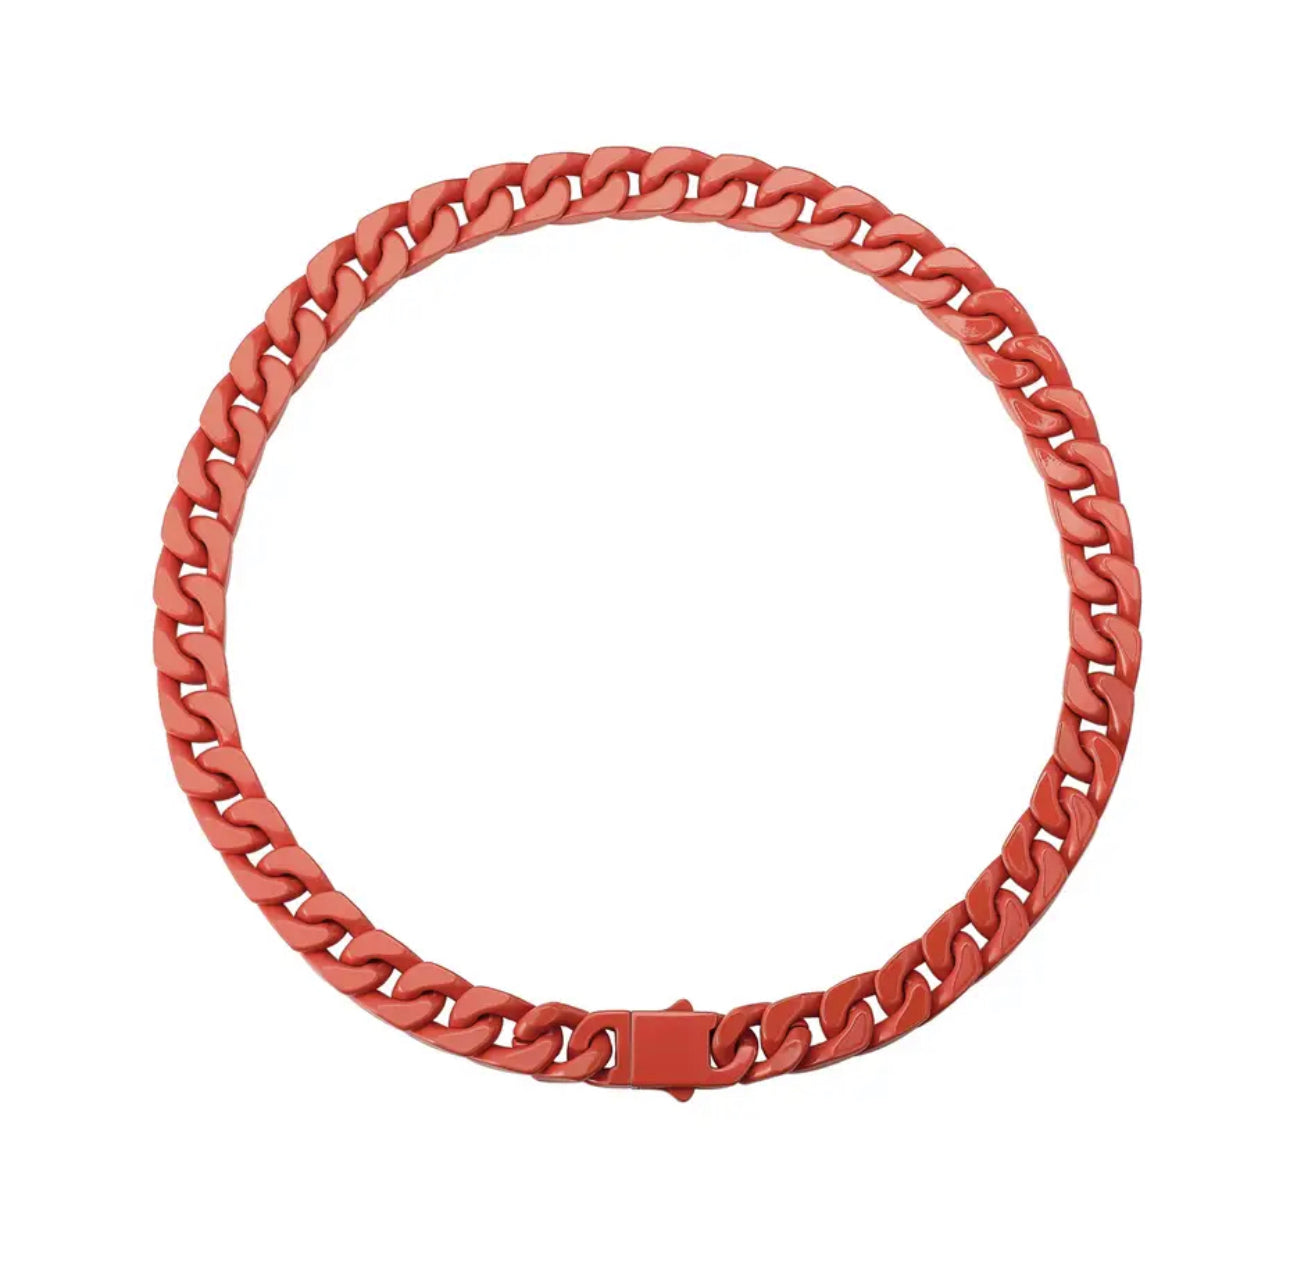 Color Cuban Chain Necklace